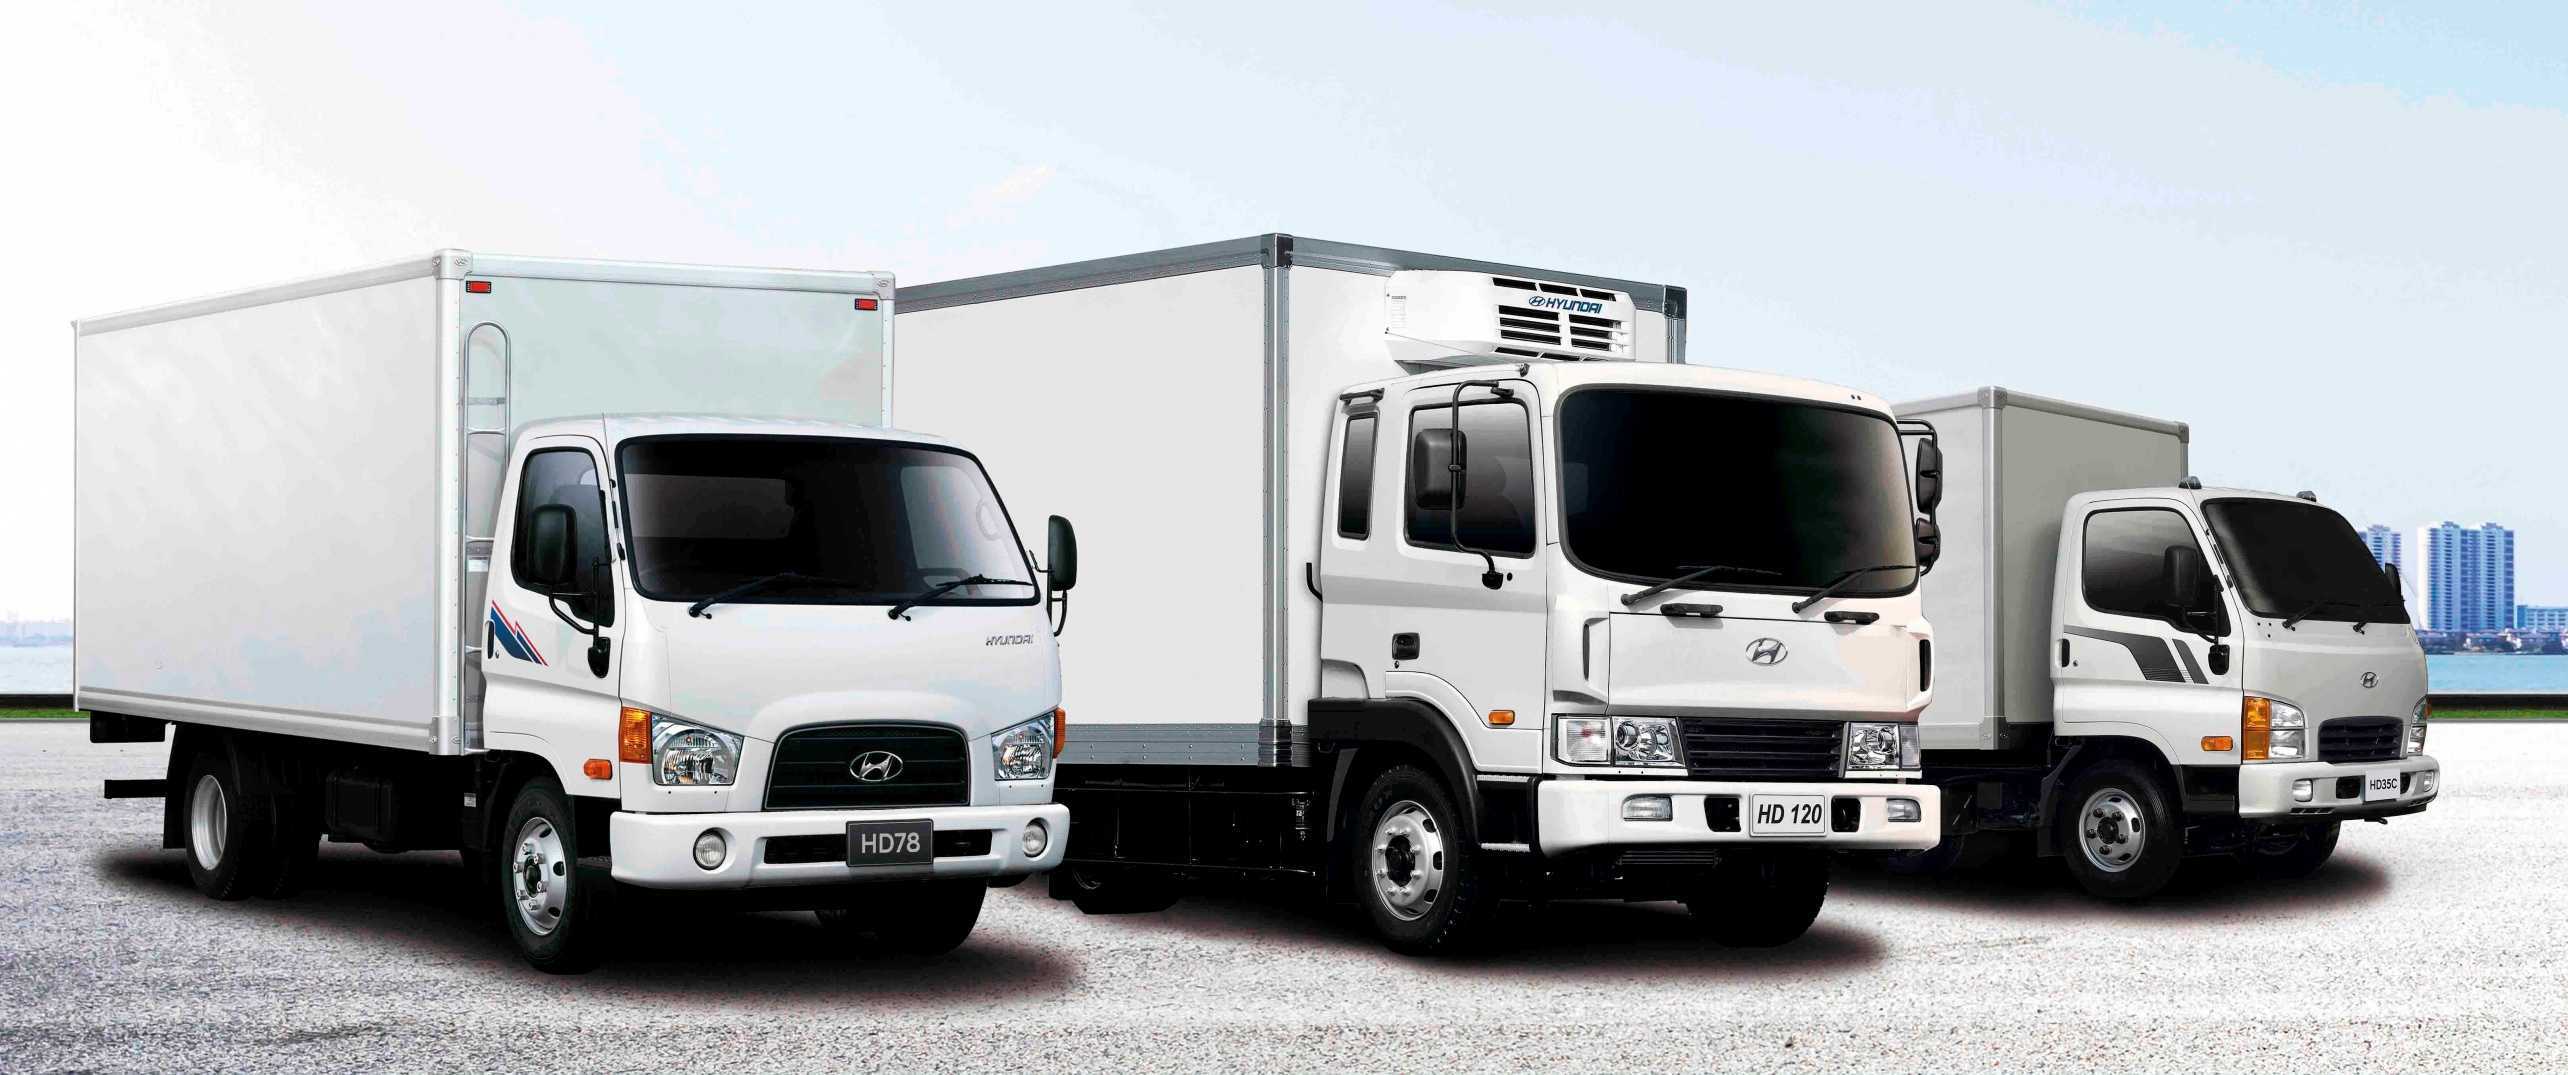 Hyundai (хендай) hd65: описание и технические характеристики грузовика | все о спецтехнике